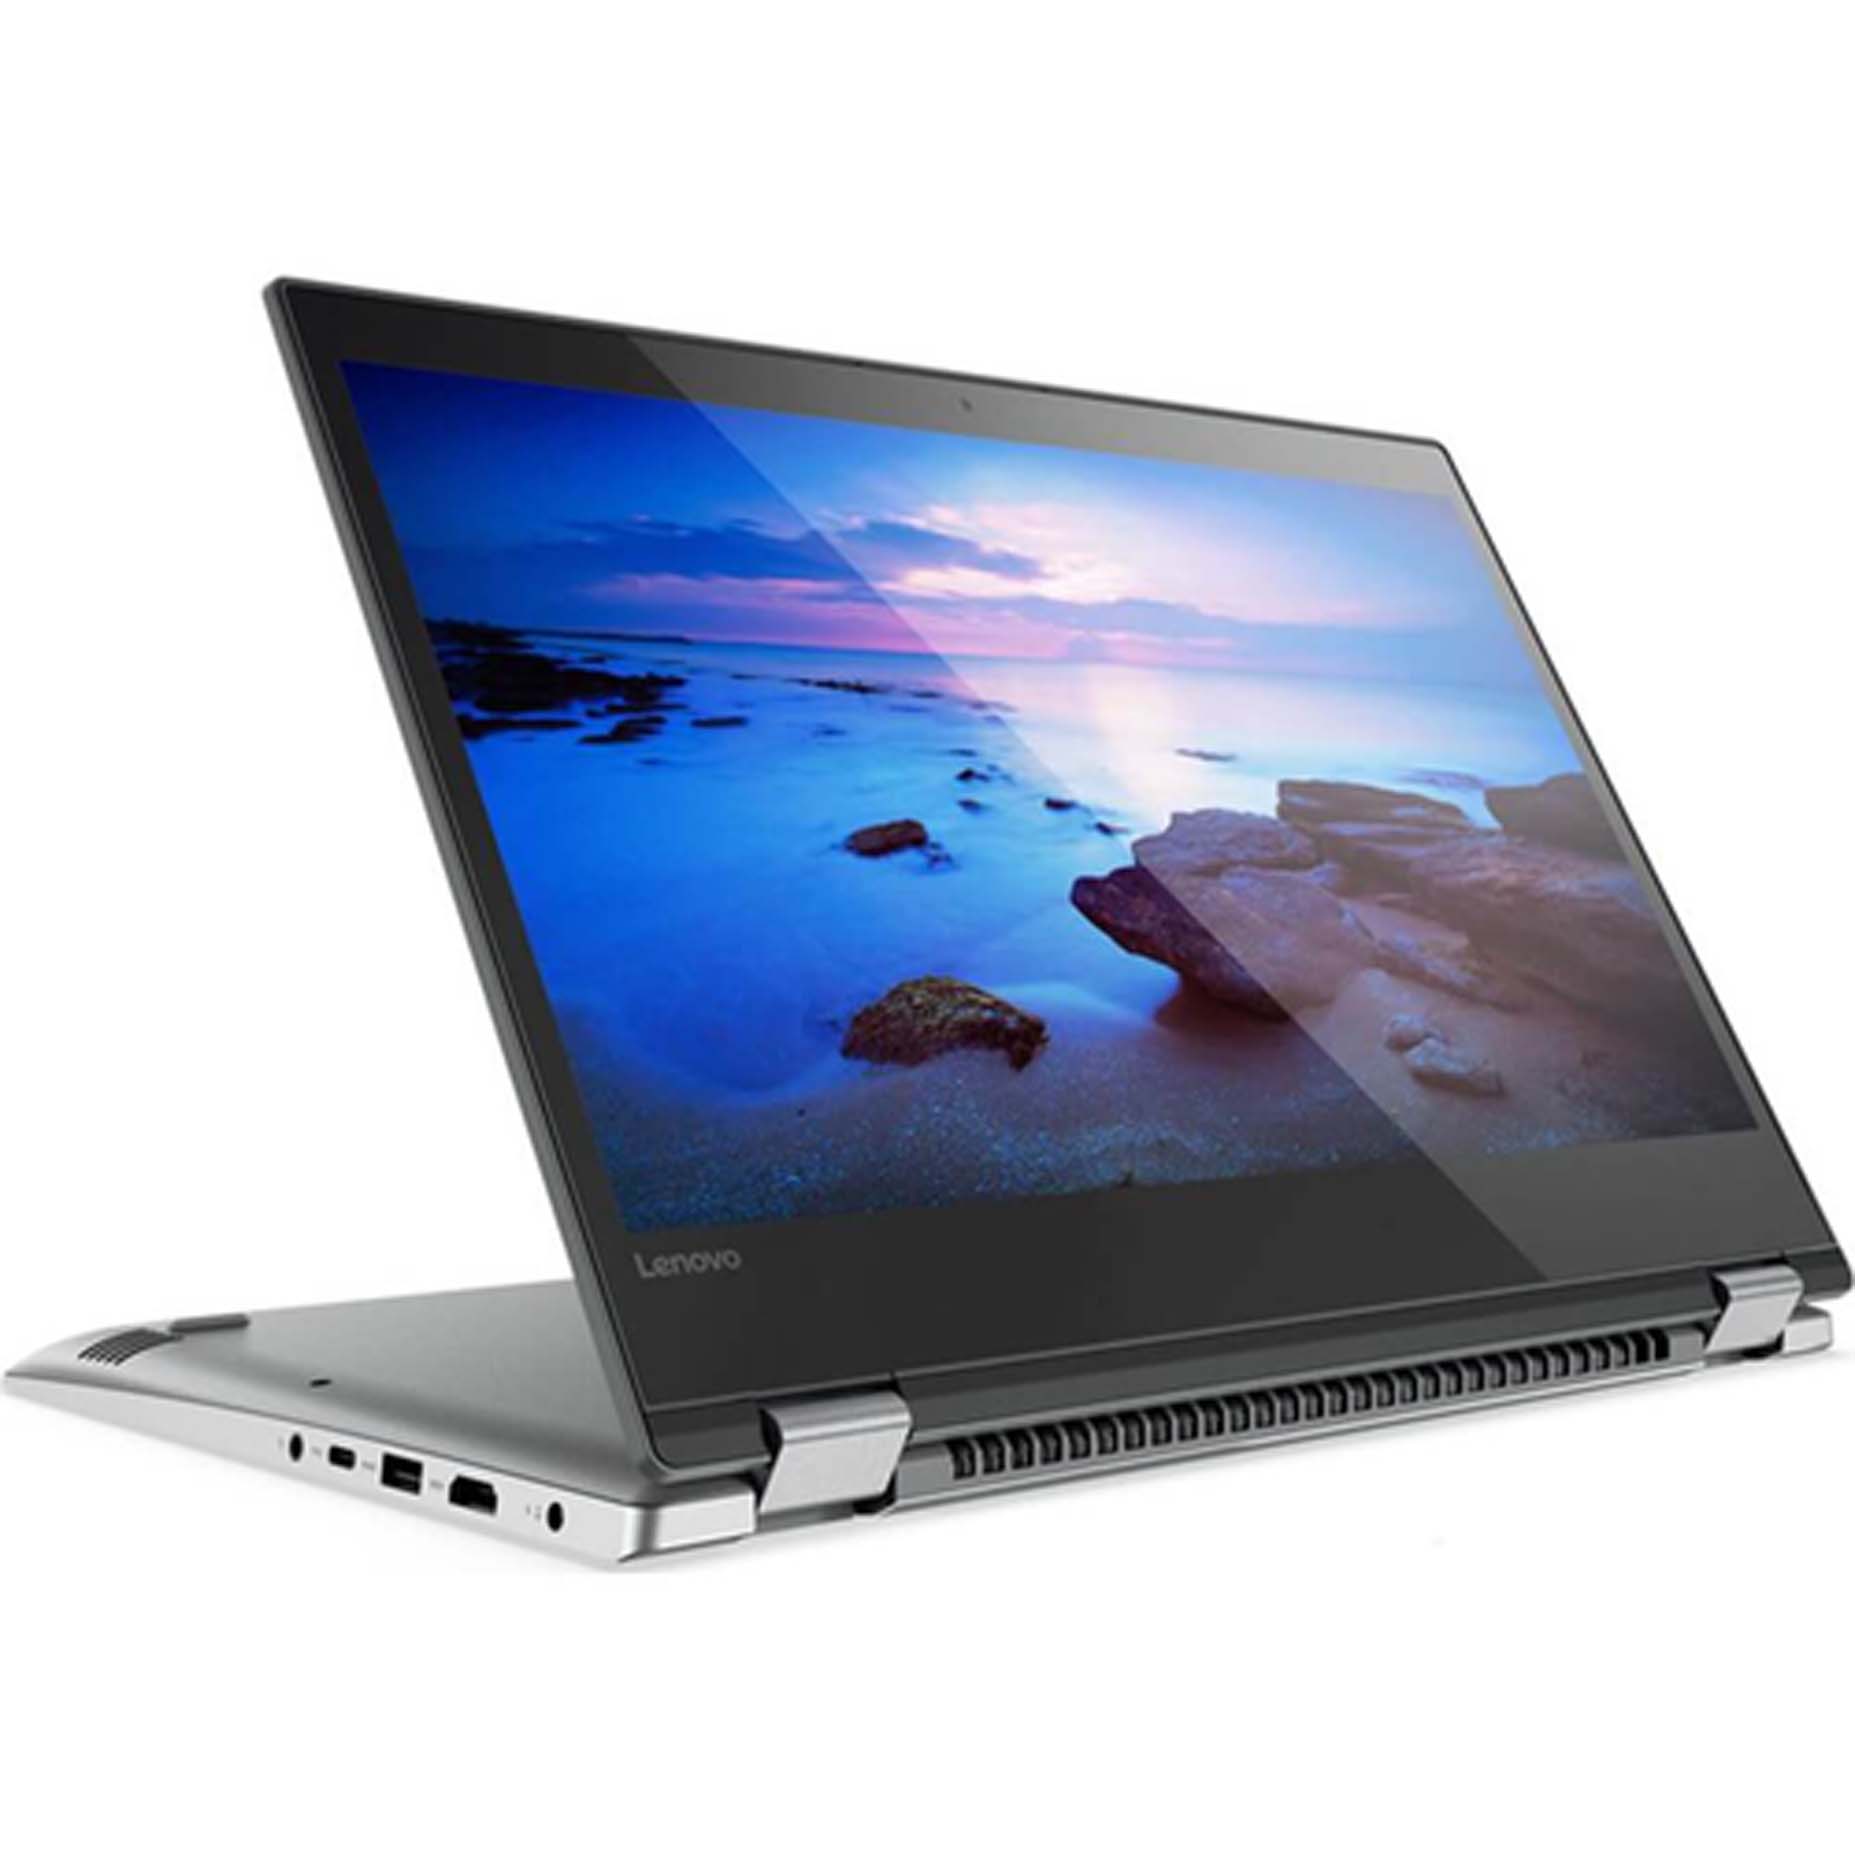 Harga Lenovo Yoga 520-14IKB PQID Laptop i3-8130 8GB 1TB MX130 2GB Win10 14 Inch Touch Grey